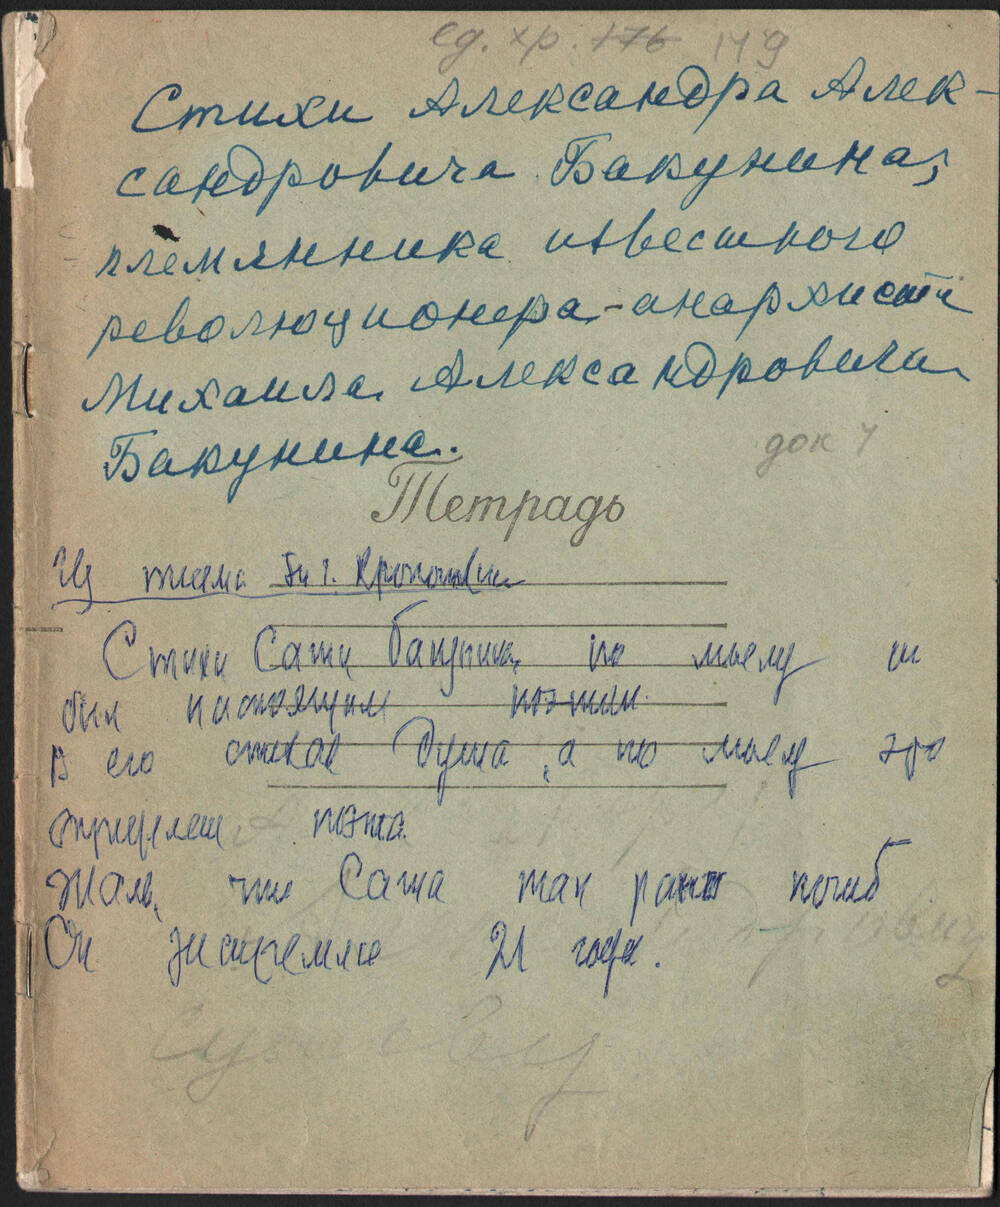 Тетрадь со стихами А. А. Бакунина (младшего), переписанными Т. Г. Кропоткиной